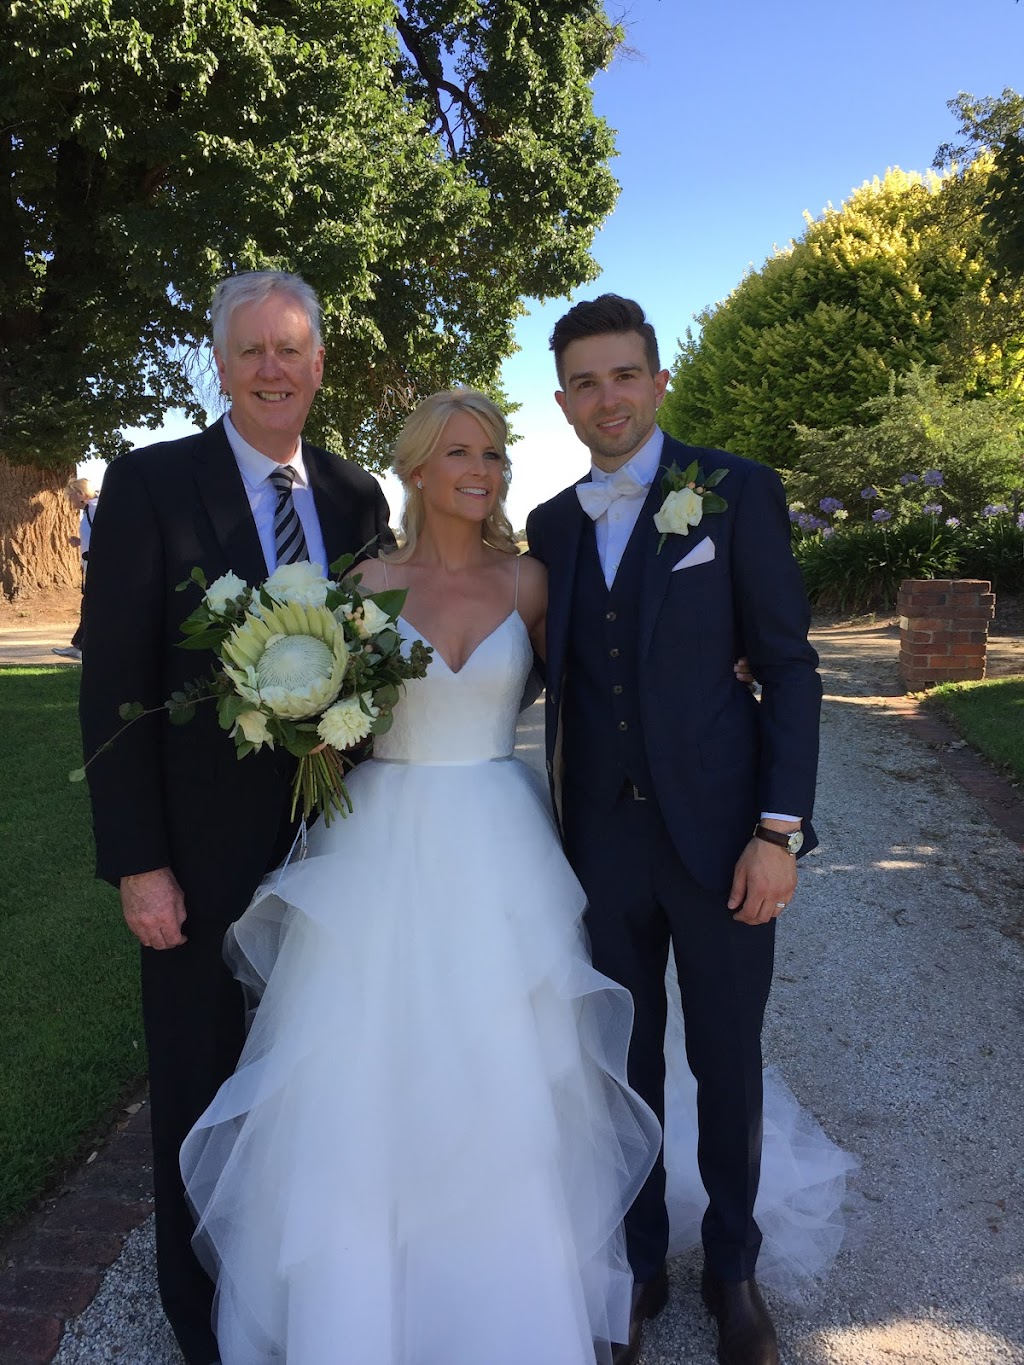 Chris Slater marriage celebrant | Herbert St, Mornington VIC 3931, Australia | Phone: 0413 024 358